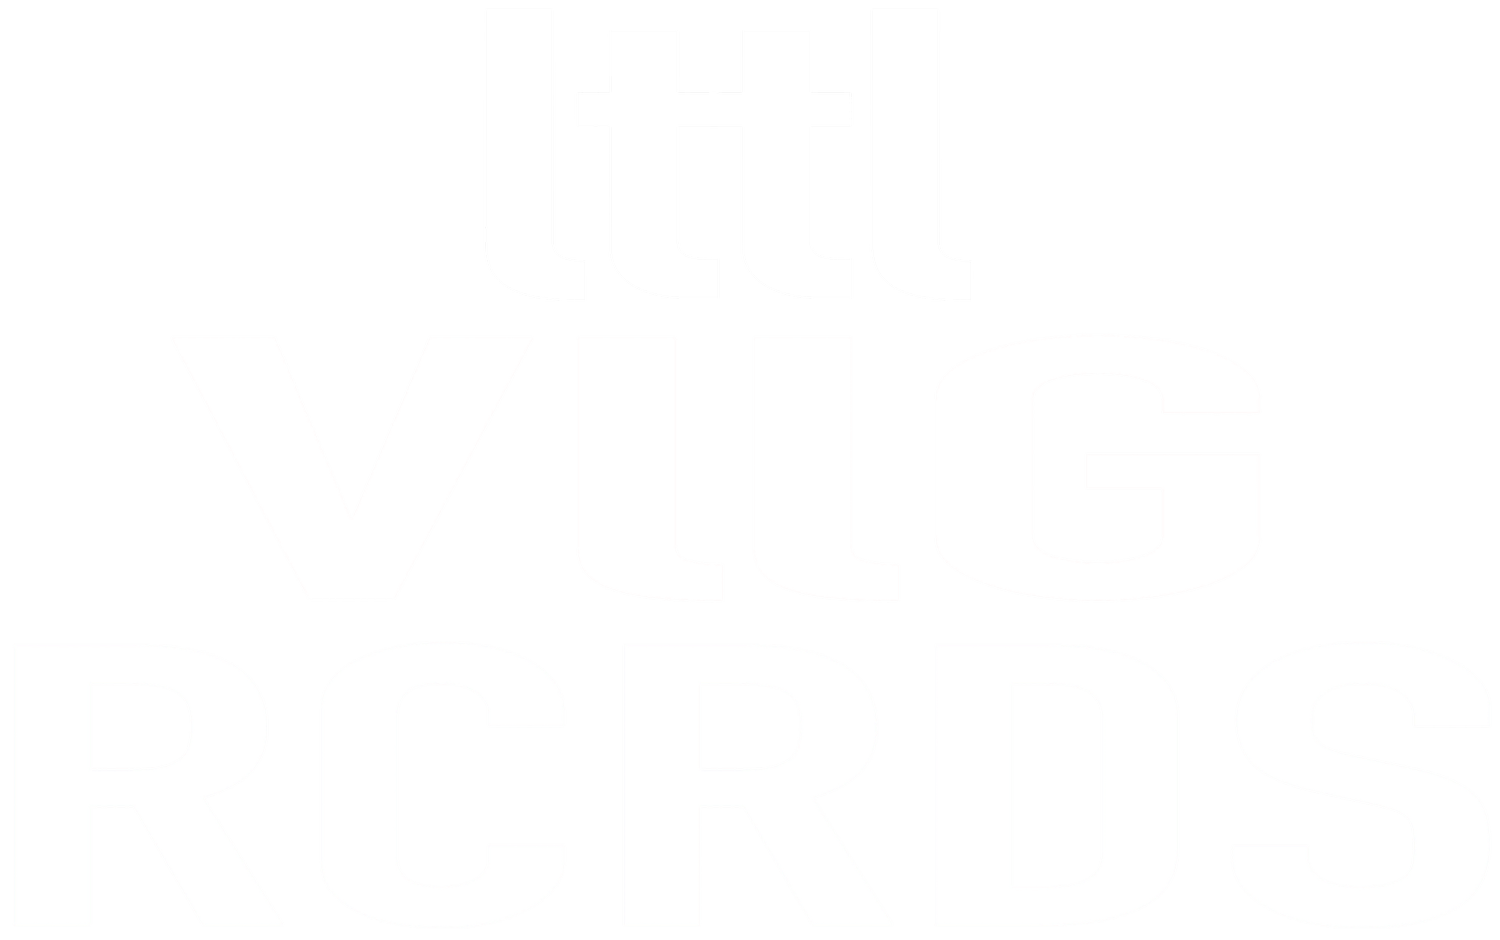 Little Village Records